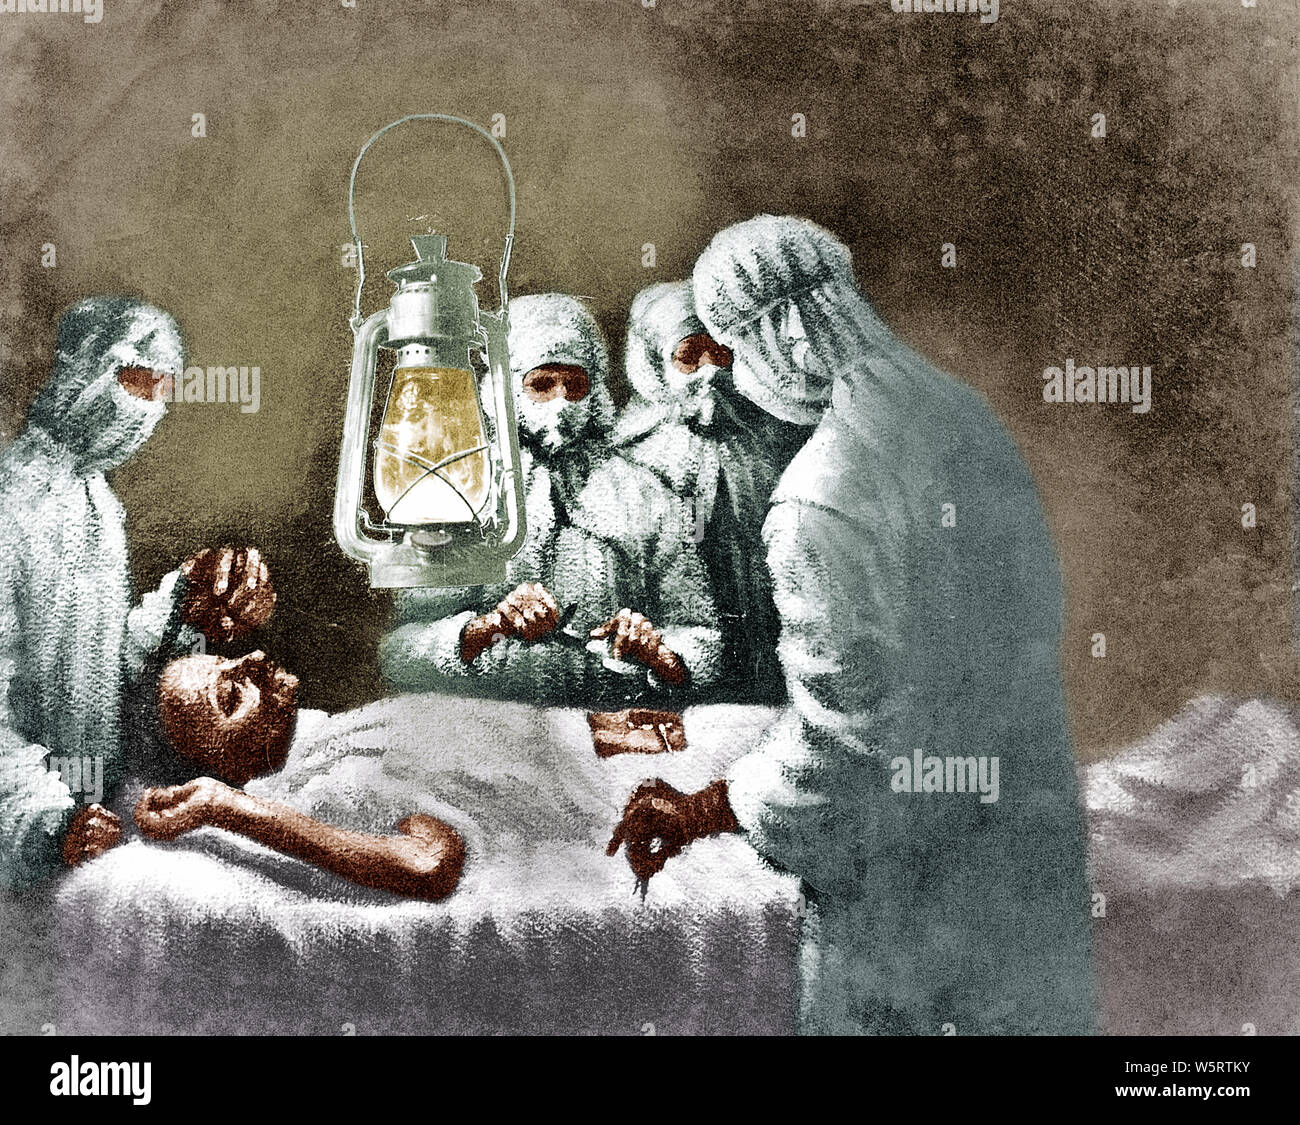 Opération de l'appendicite de Mahatma Gandhi Pune Maharashtra Inde Asie Peinture Janvier 1924 Banque D'Images